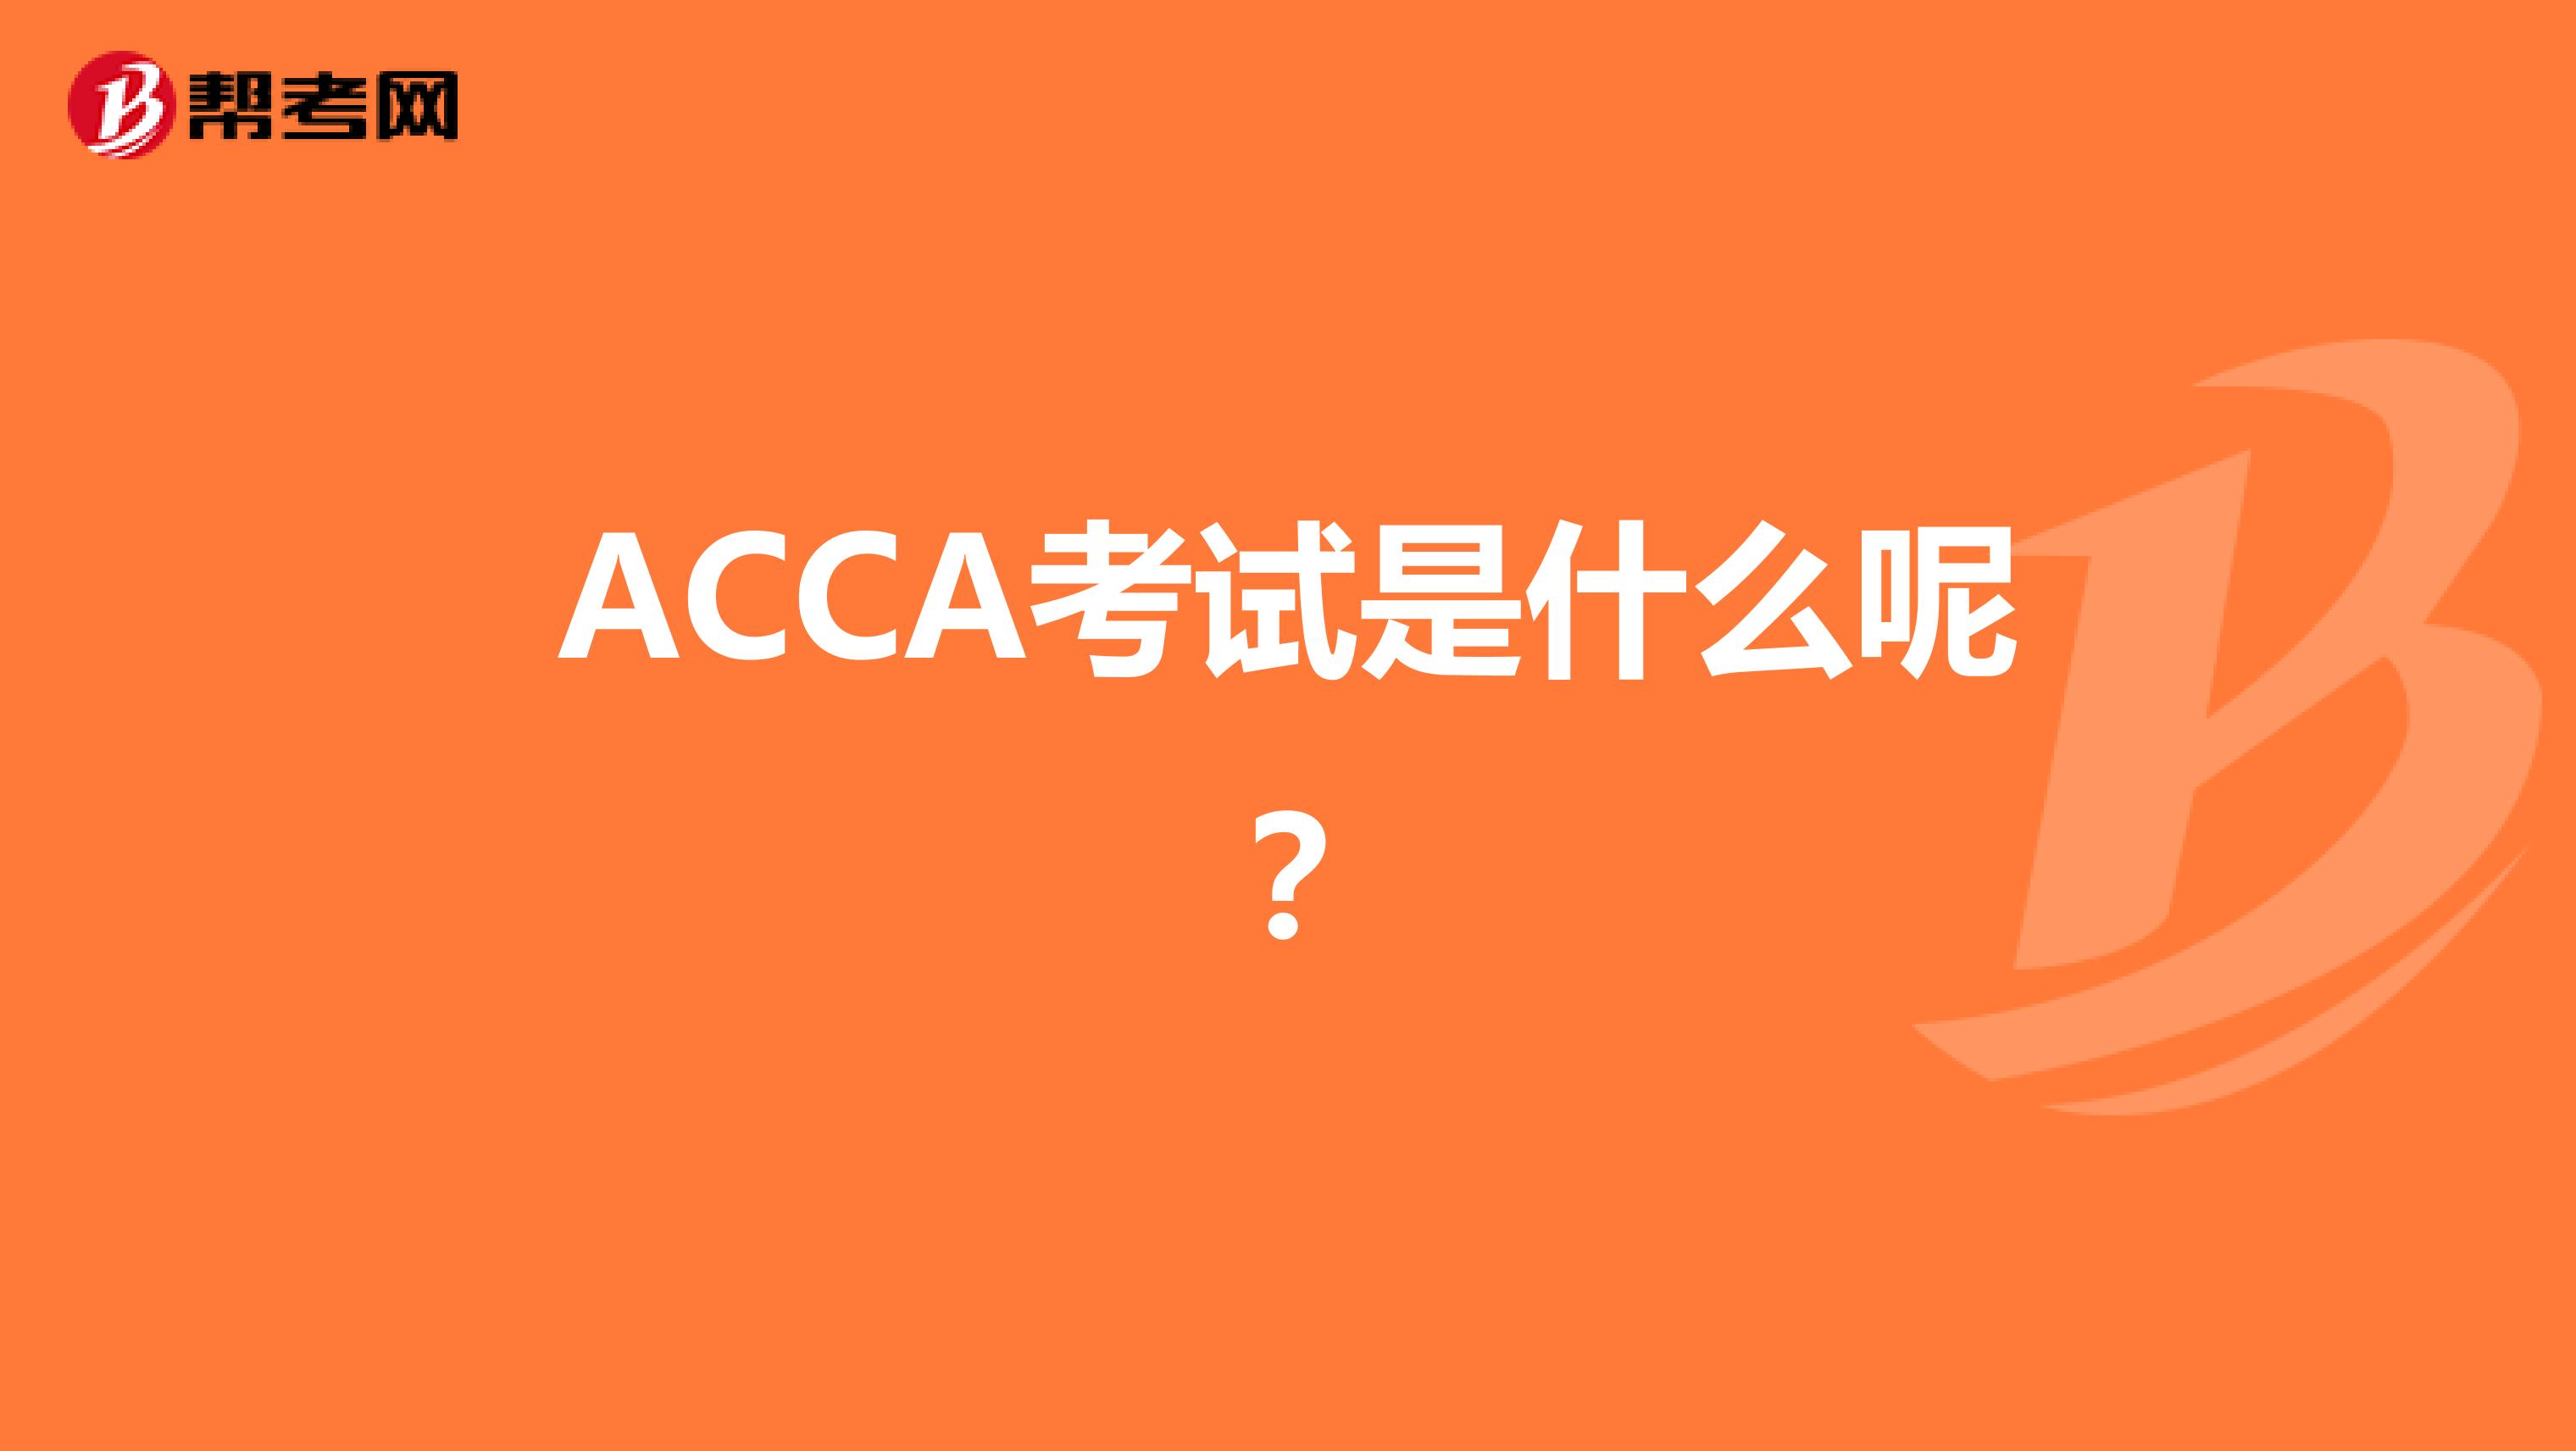 ACCA考试是什么呢？